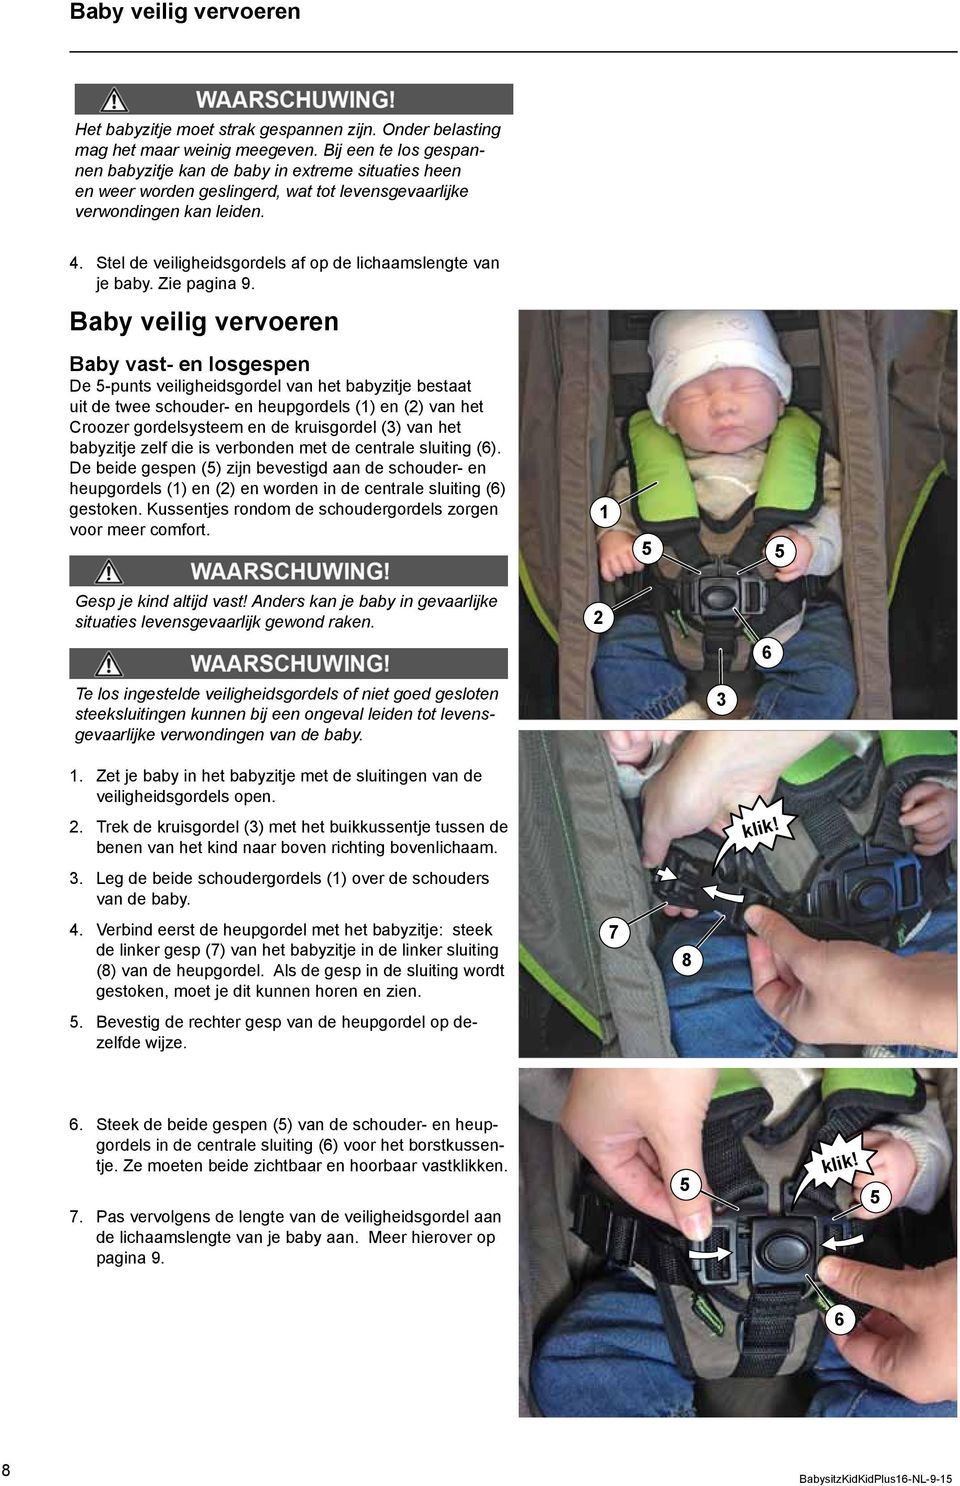 Stel de veiligheidsgordels af op de lichaamslengte van je baby. Zie pagina 9.